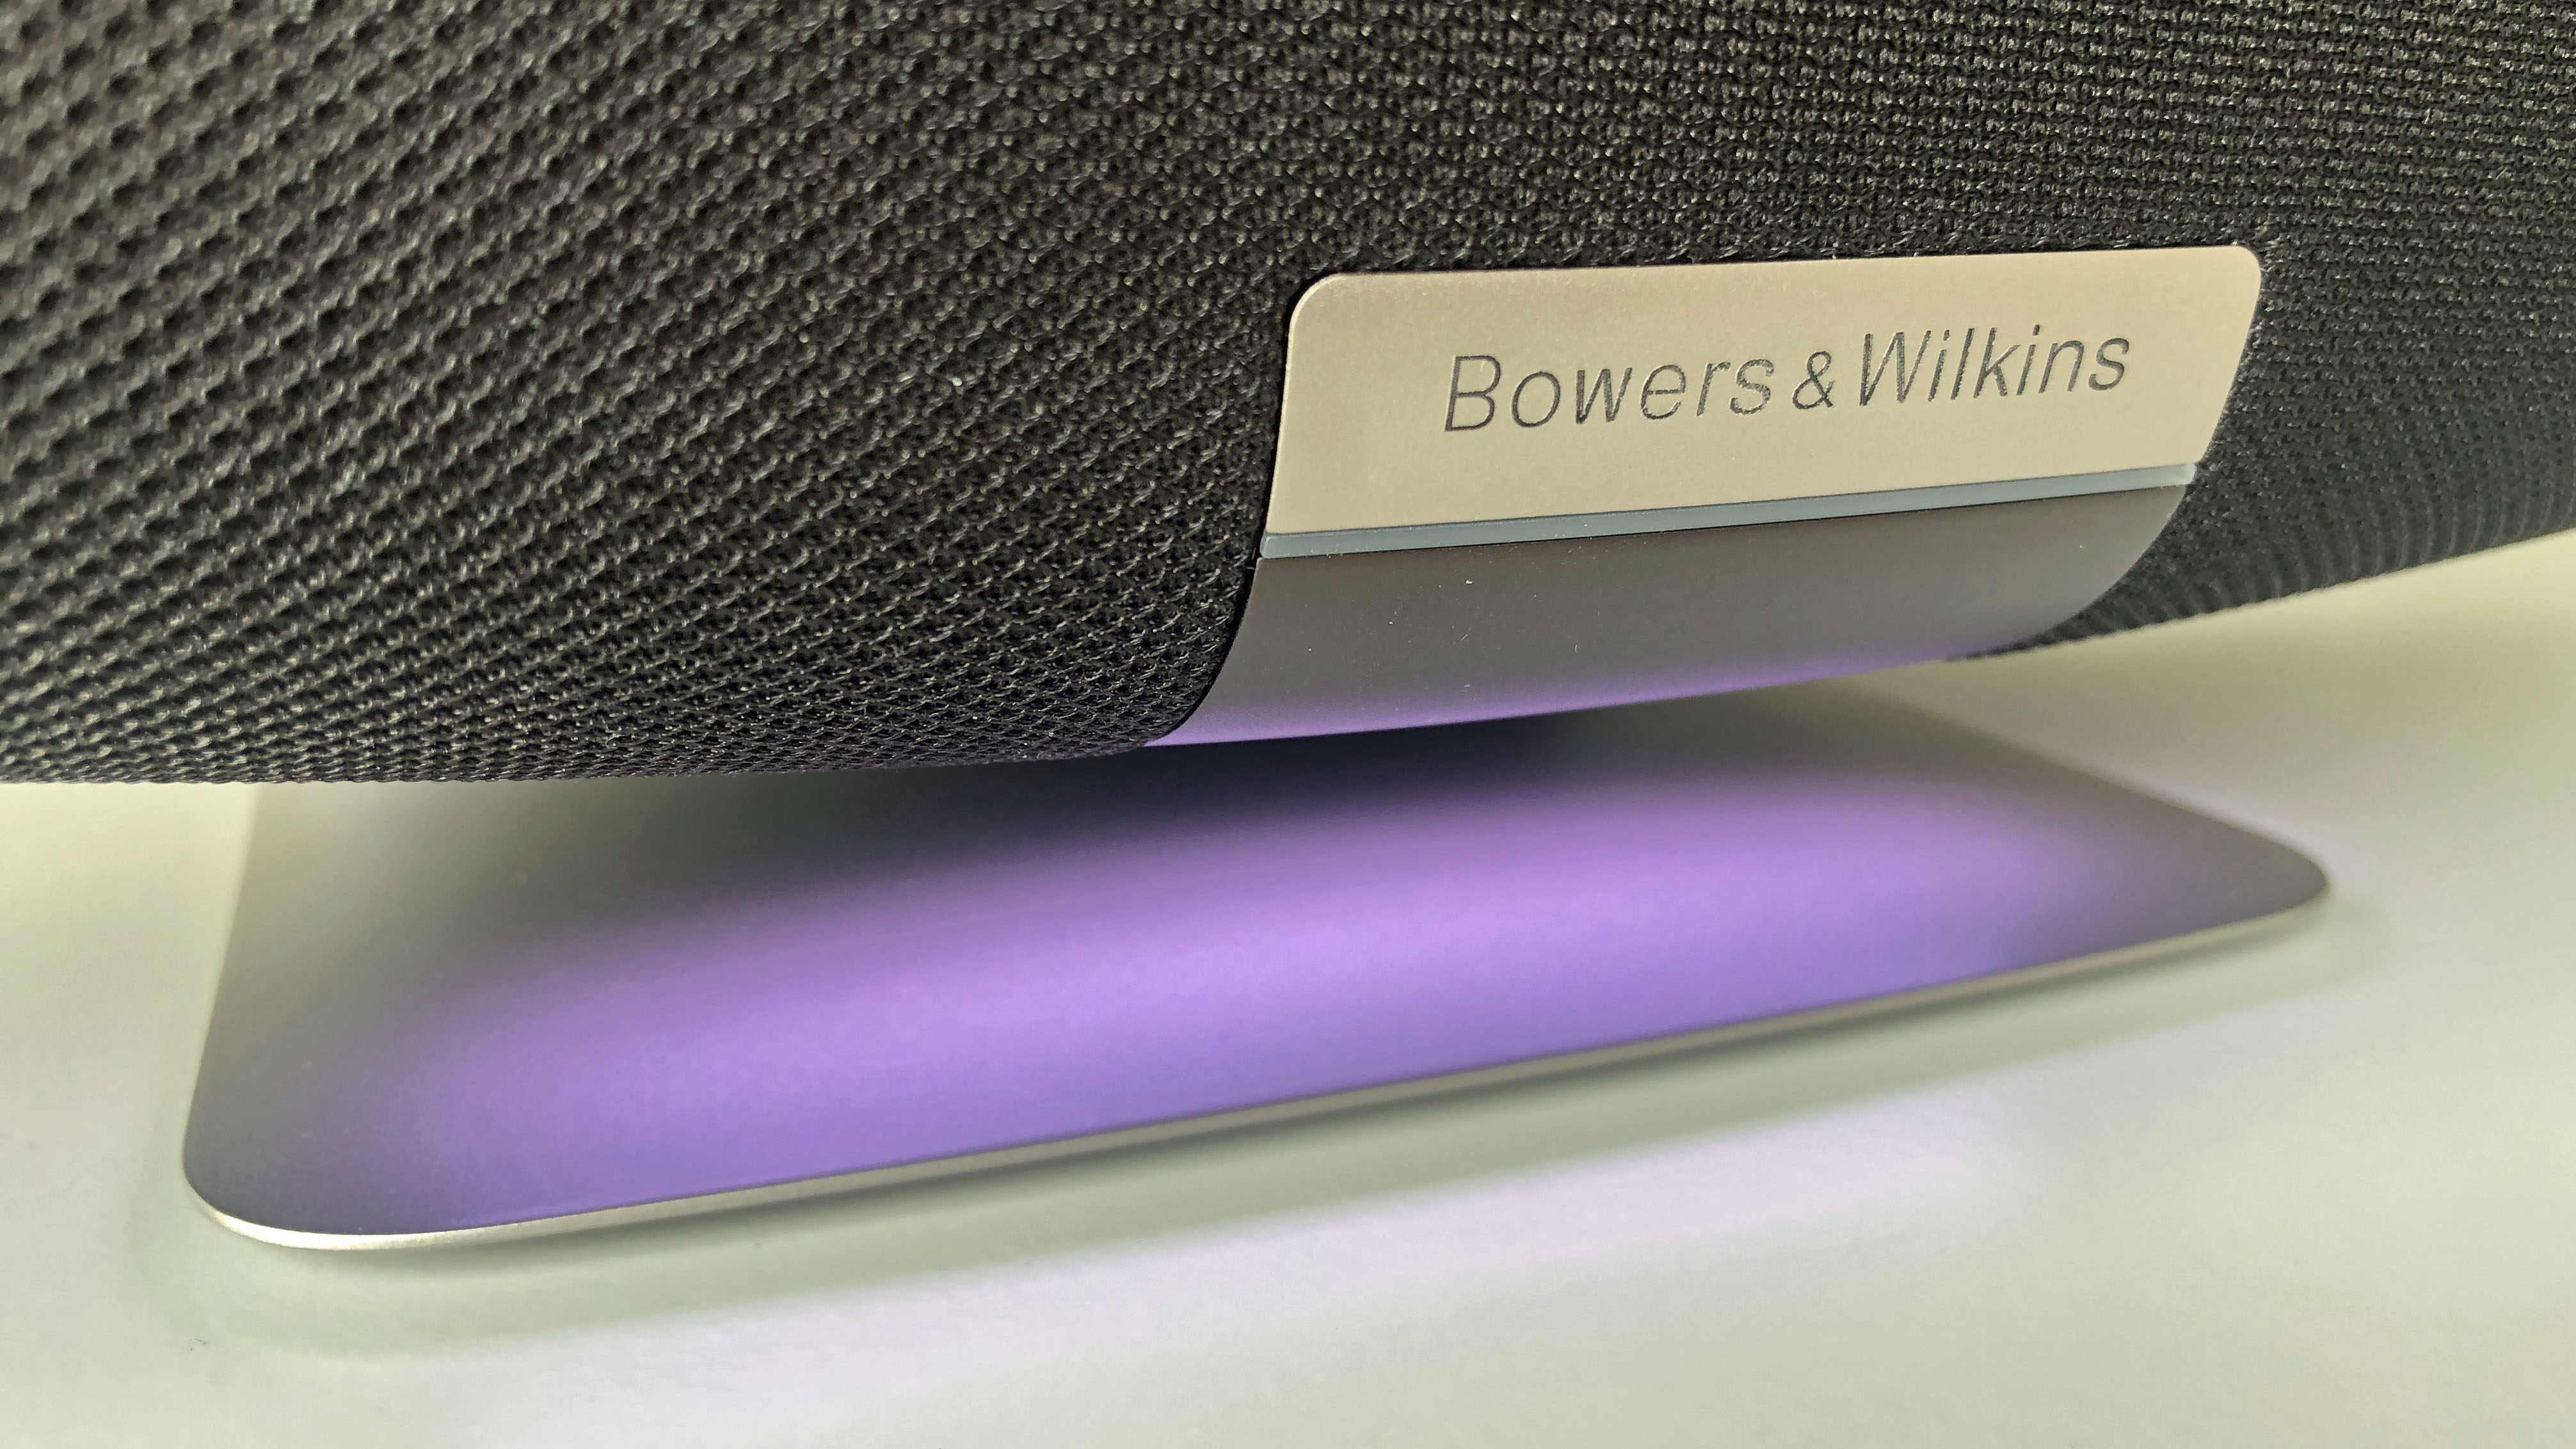 the bowers & wilkins zeppelin wireless speaker